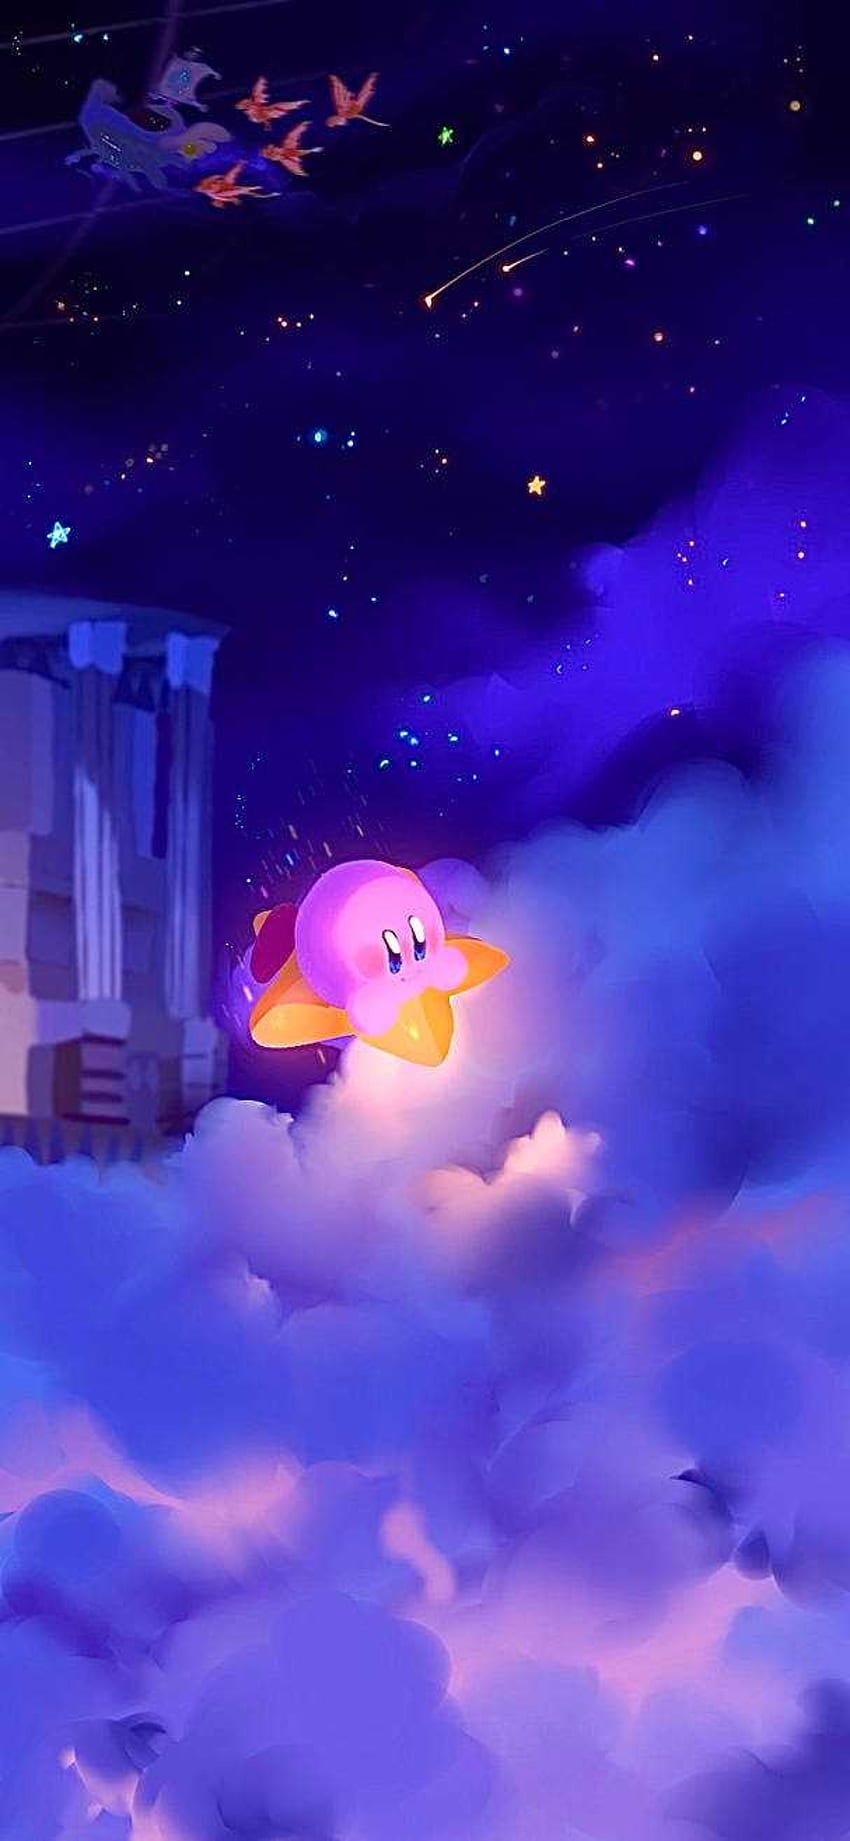 Những hình nền Kirby độ phân giải cao sẽ khiến cho chiếc máy tính của bạn trở nên sống động và đẹp mắt hơn bao giờ hết. Hãy xem bức ảnh để cảm nhận được màu sắc sinh động, nét vẽ chi tiết và kỹ thuật độc đáo mà chú nhóm Kirby đã mang đến cho những bức ảnh đẹp nhất.